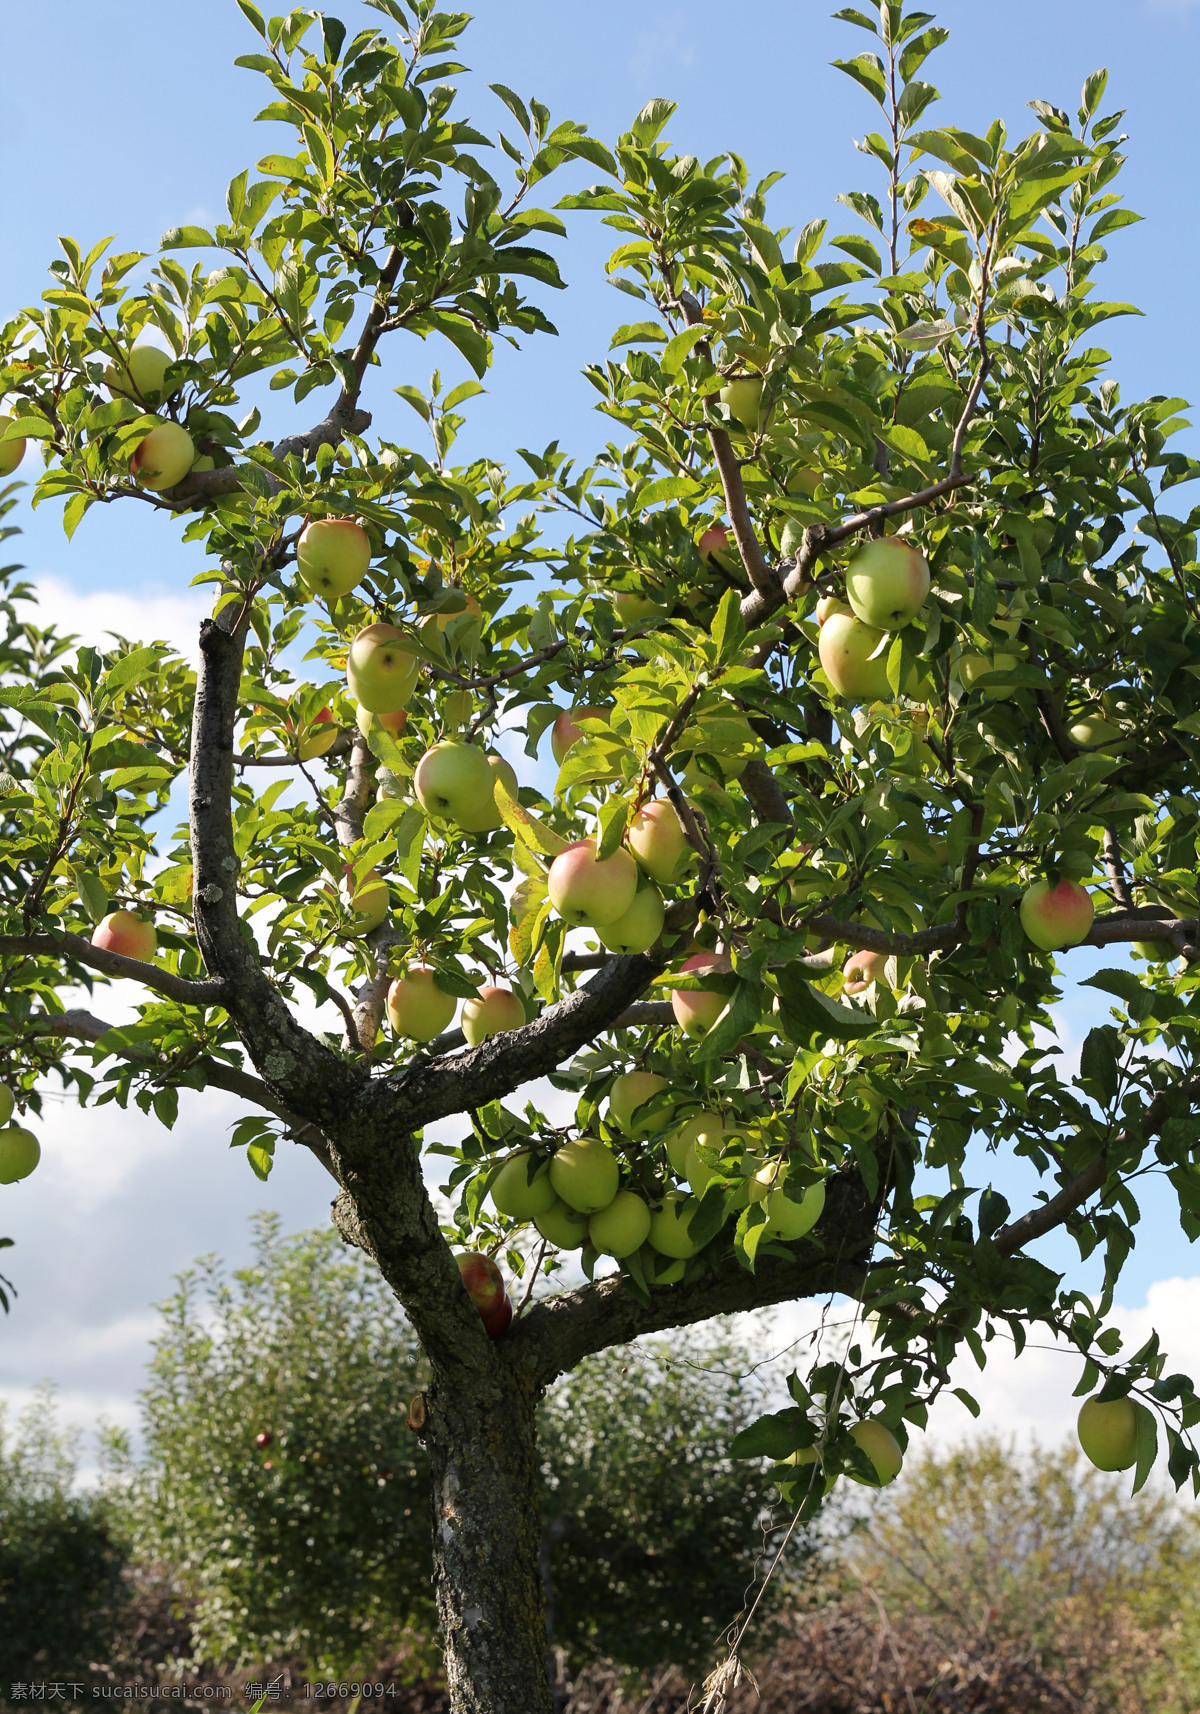 苹果 苹果树 水果 富士苹果 新鲜水果 进口水果 红富士 apple 新鲜苹果 进口苹果 健康 水果苹果 生物世界 树木 树木树叶